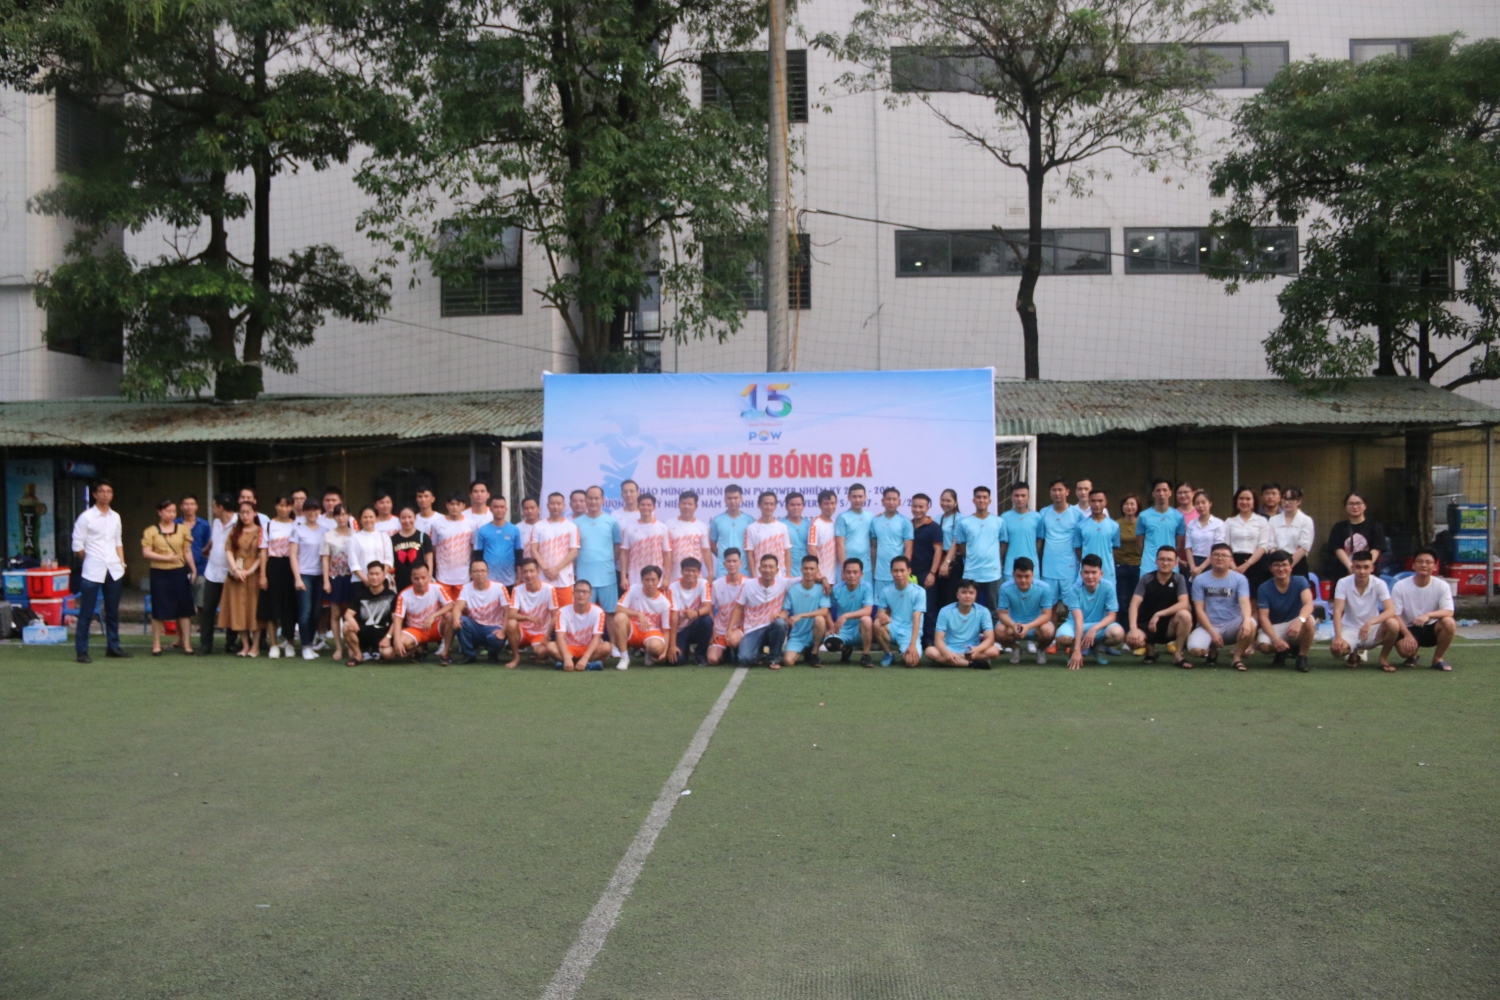 Tổ chức giao hữu bóng đá chào mừng Đại hội Đoàn Thanh niên và 15 năm thành lập Tổng Công ty